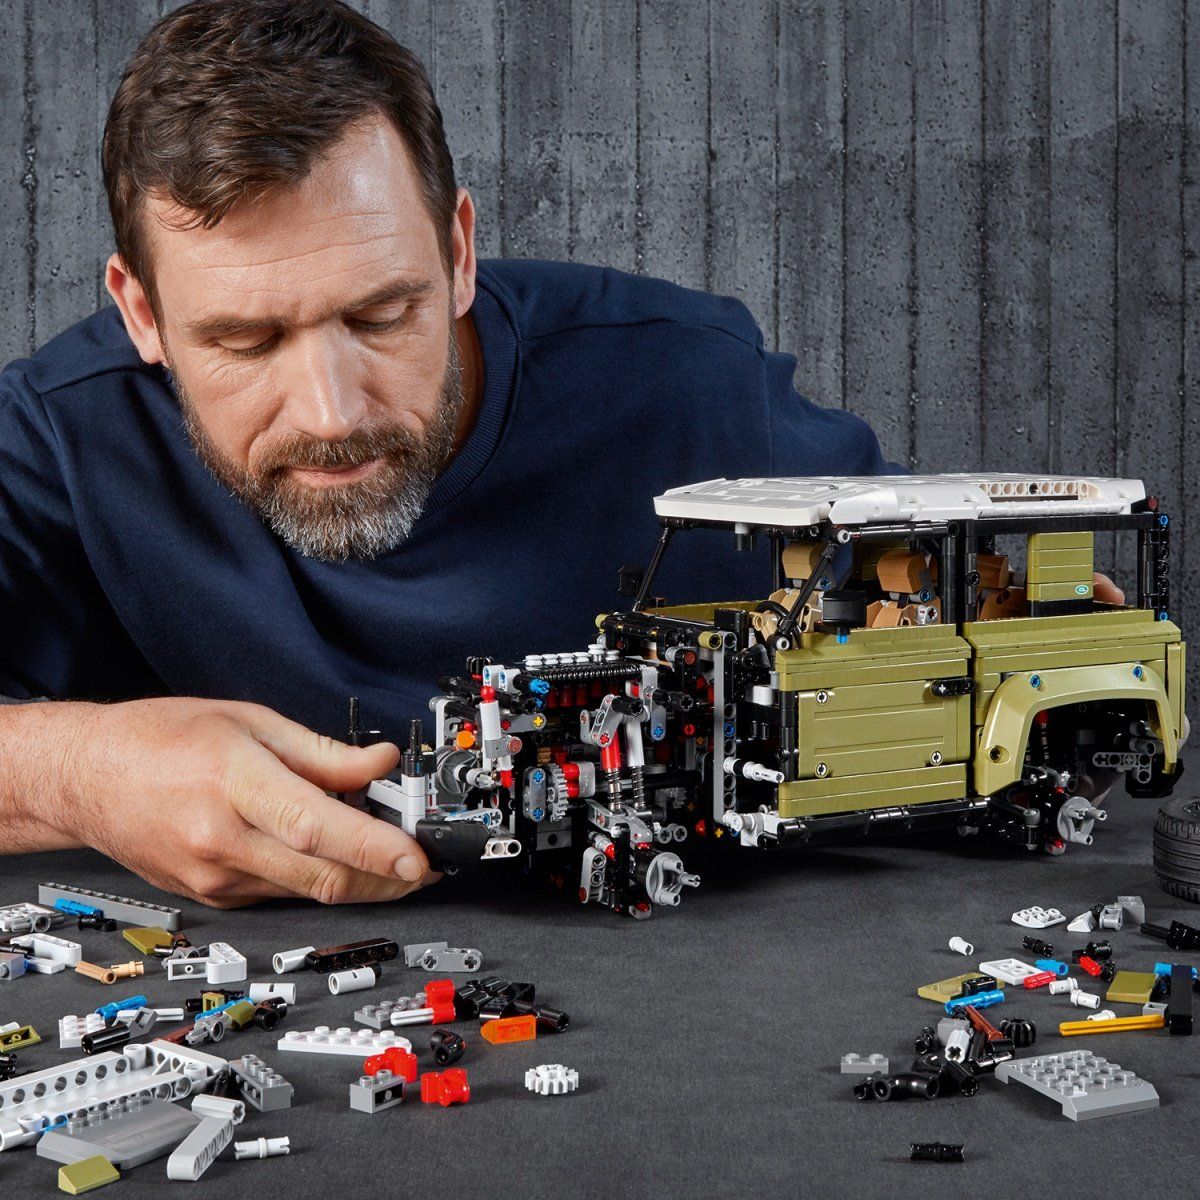 Le bolide télécommandé 42065 | Technic™ | Boutique LEGO® officielle CA